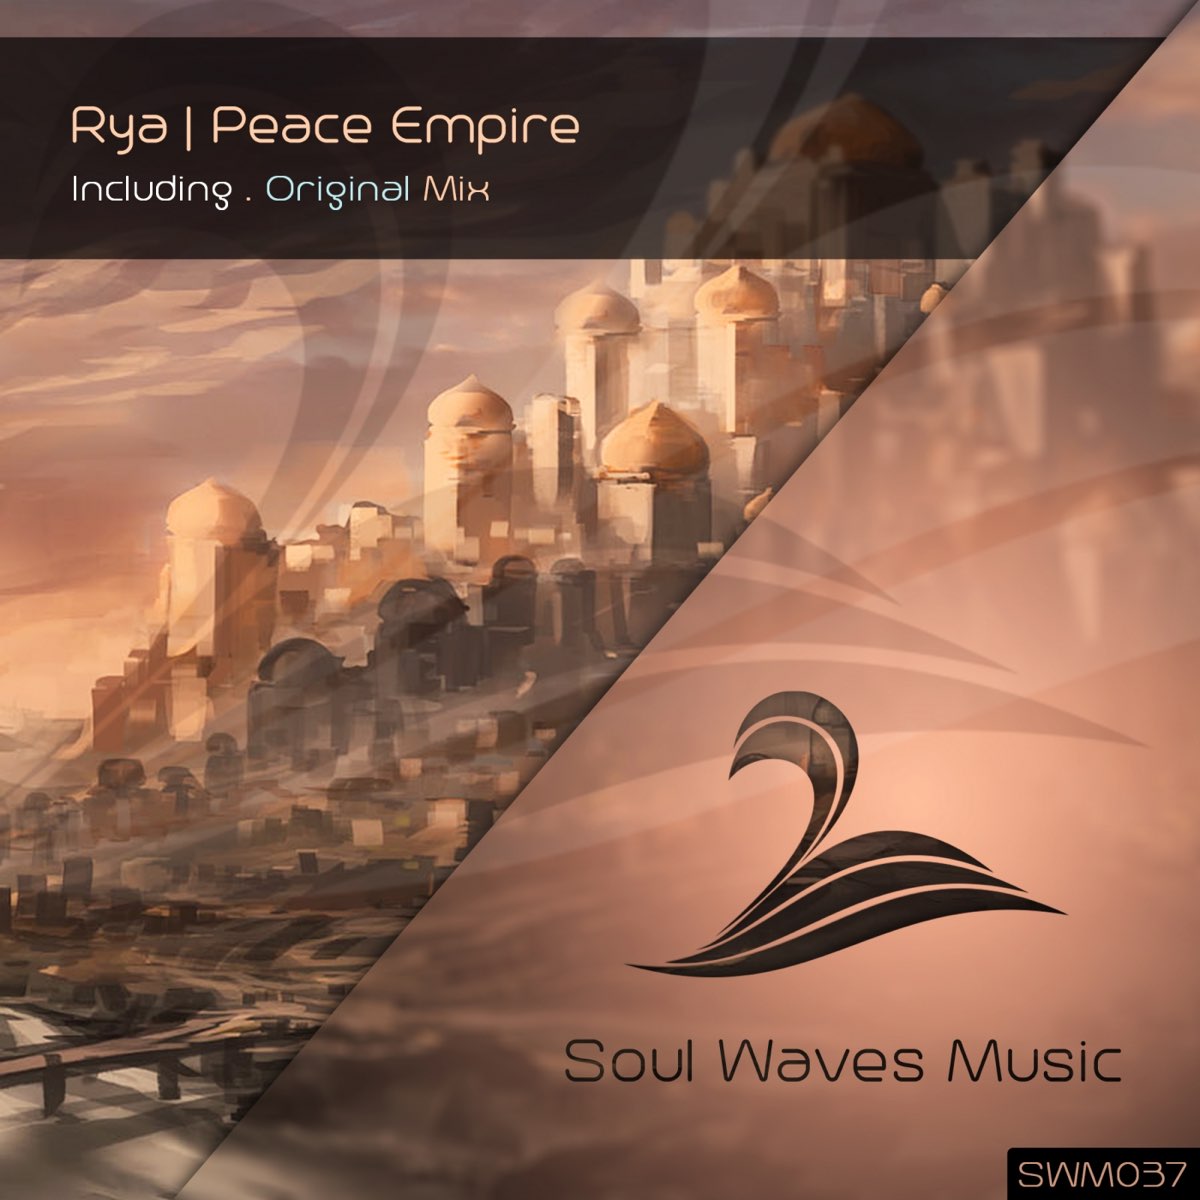 Escape to Paradise плакат. New Empire Peace. Peace треки.